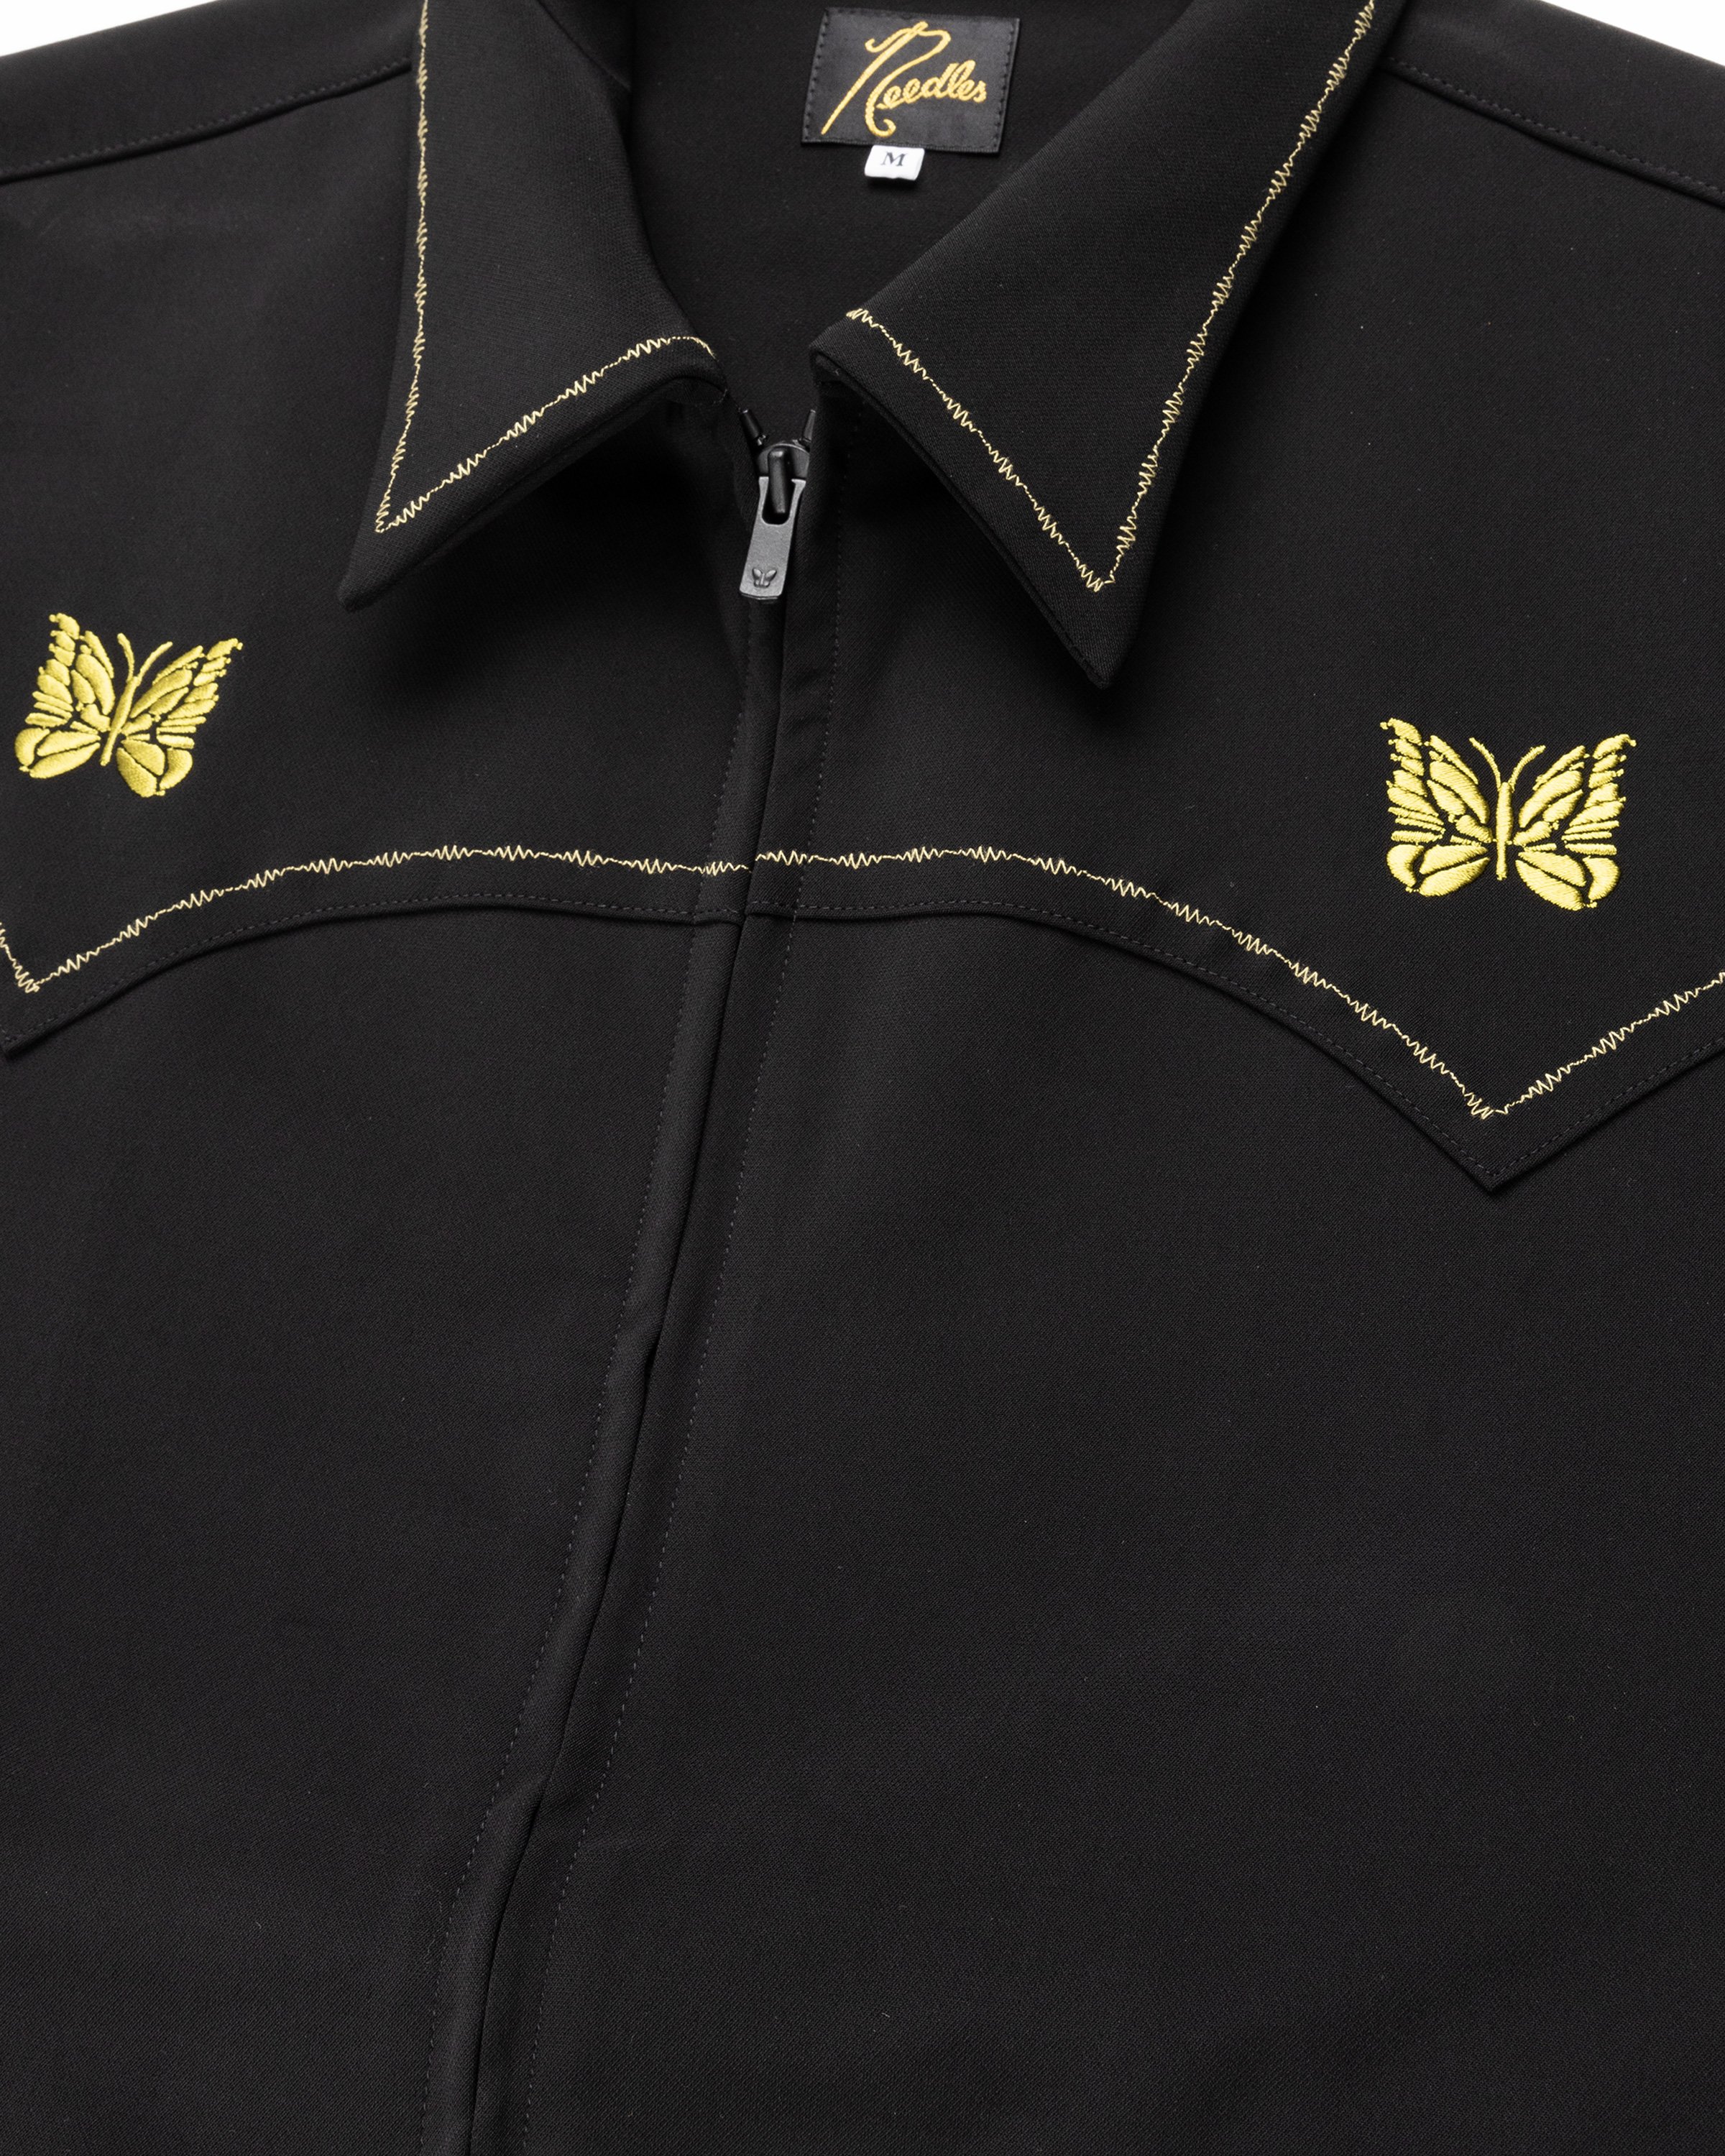 Needles - Western Sport Jacket - PE/PU Double Cloth - Clothing - Black - Image 6